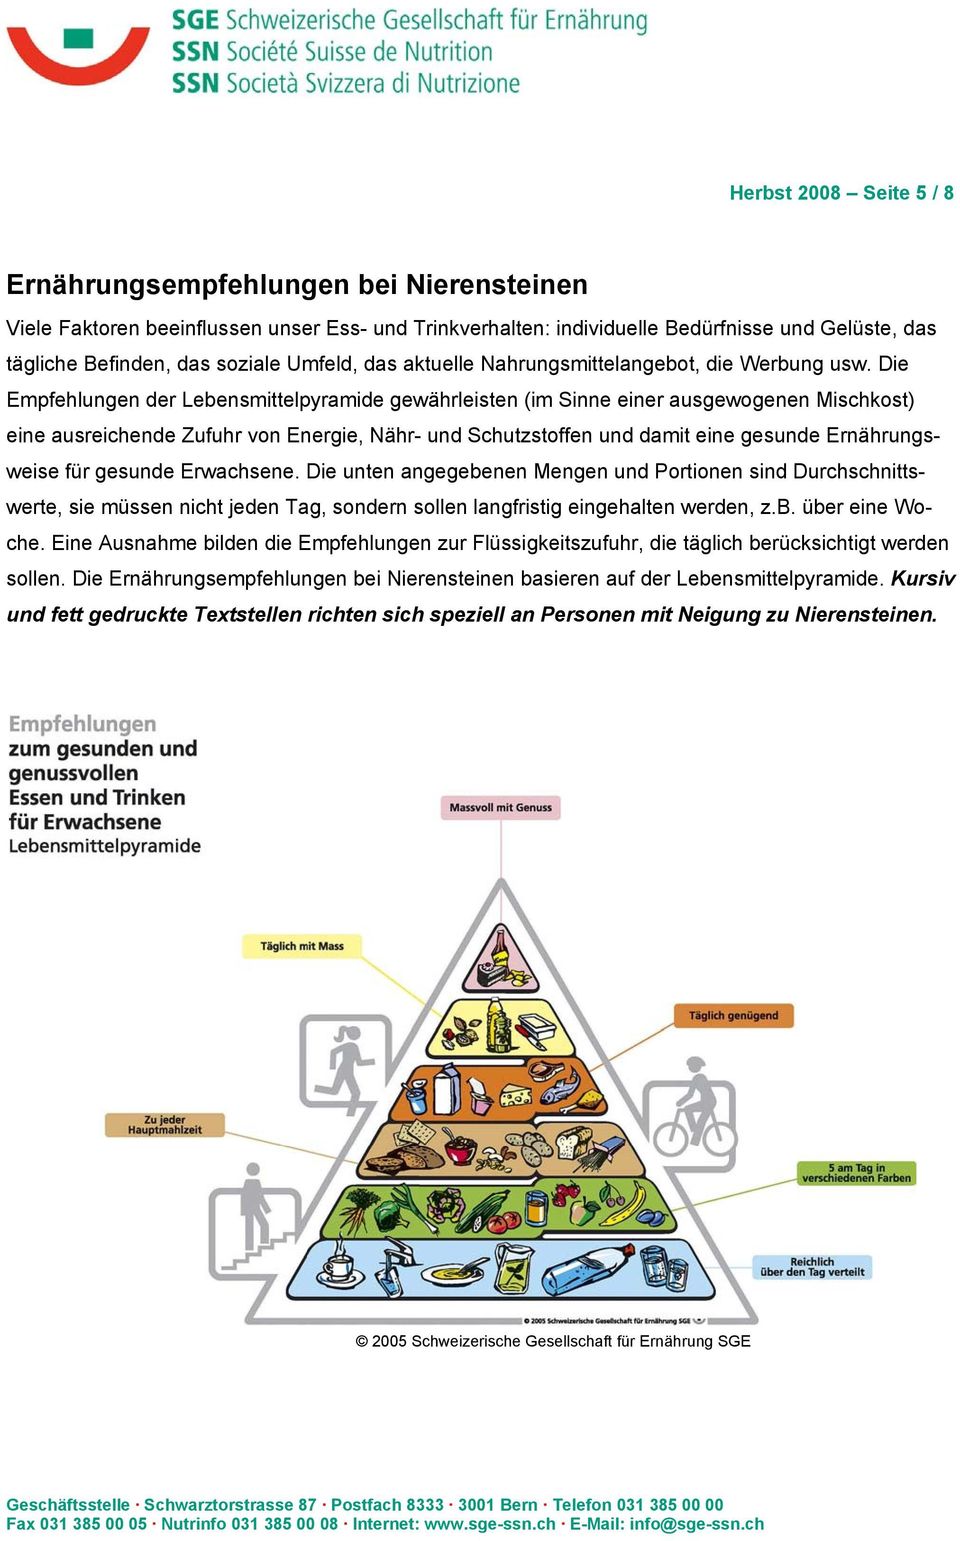 Die Empfehlungen der Lebensmittelpyramide gewährleisten (im Sinne einer ausgewogenen Mischkost) eine ausreichende Zufuhr von Energie, Nähr- und Schutzstoffen und damit eine gesunde Ernährungsweise